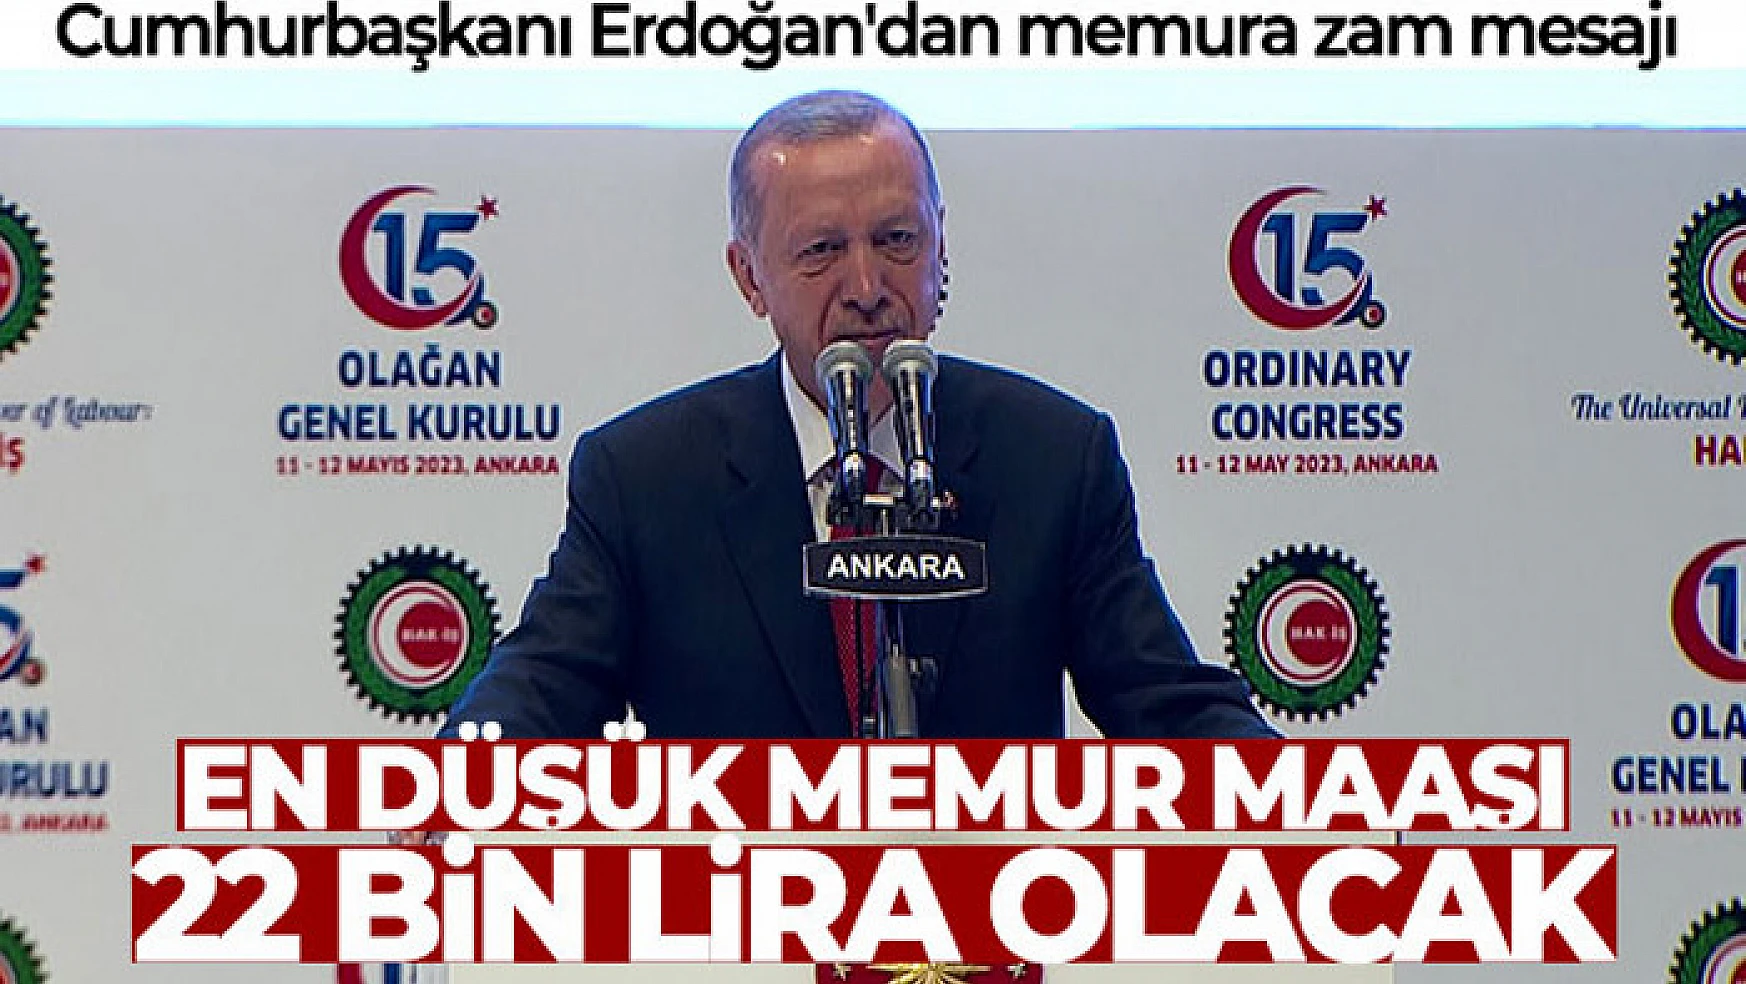 Cumhurbaşkanı Erdoğan'dan memura zam mesajı